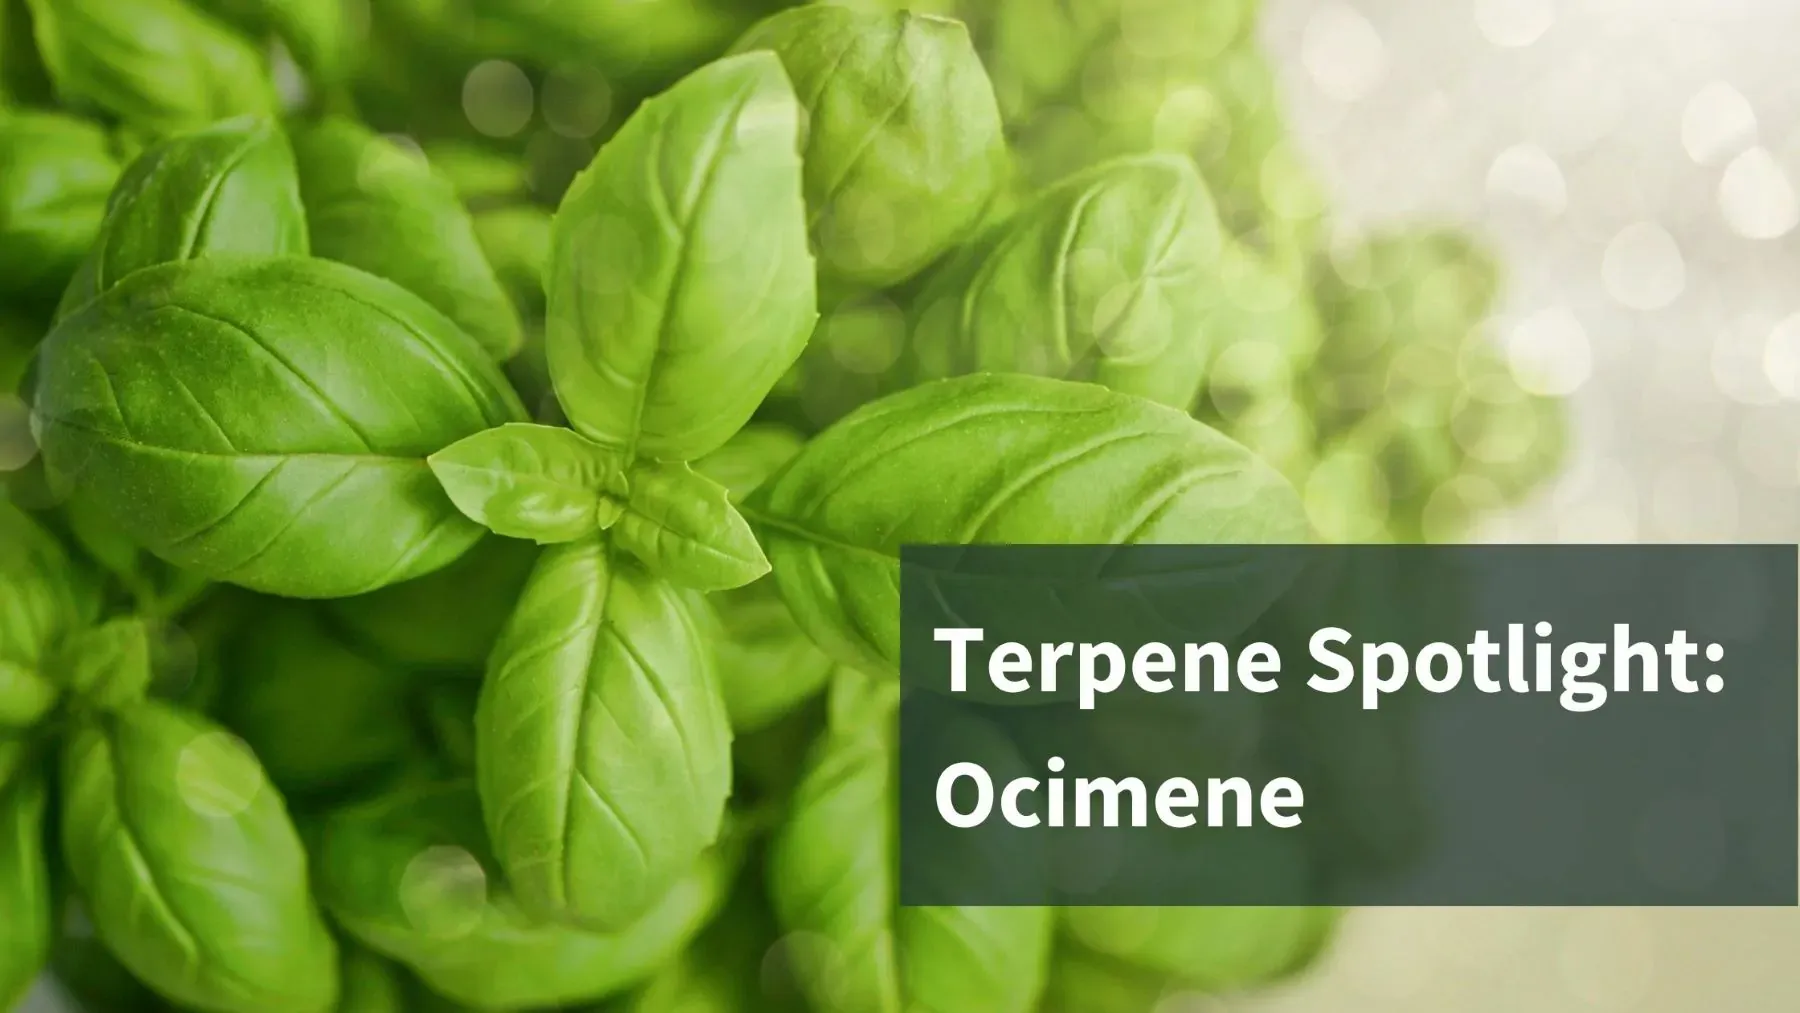 Healthy Basil plant with the text: Terpene Spotlight: Ocimene